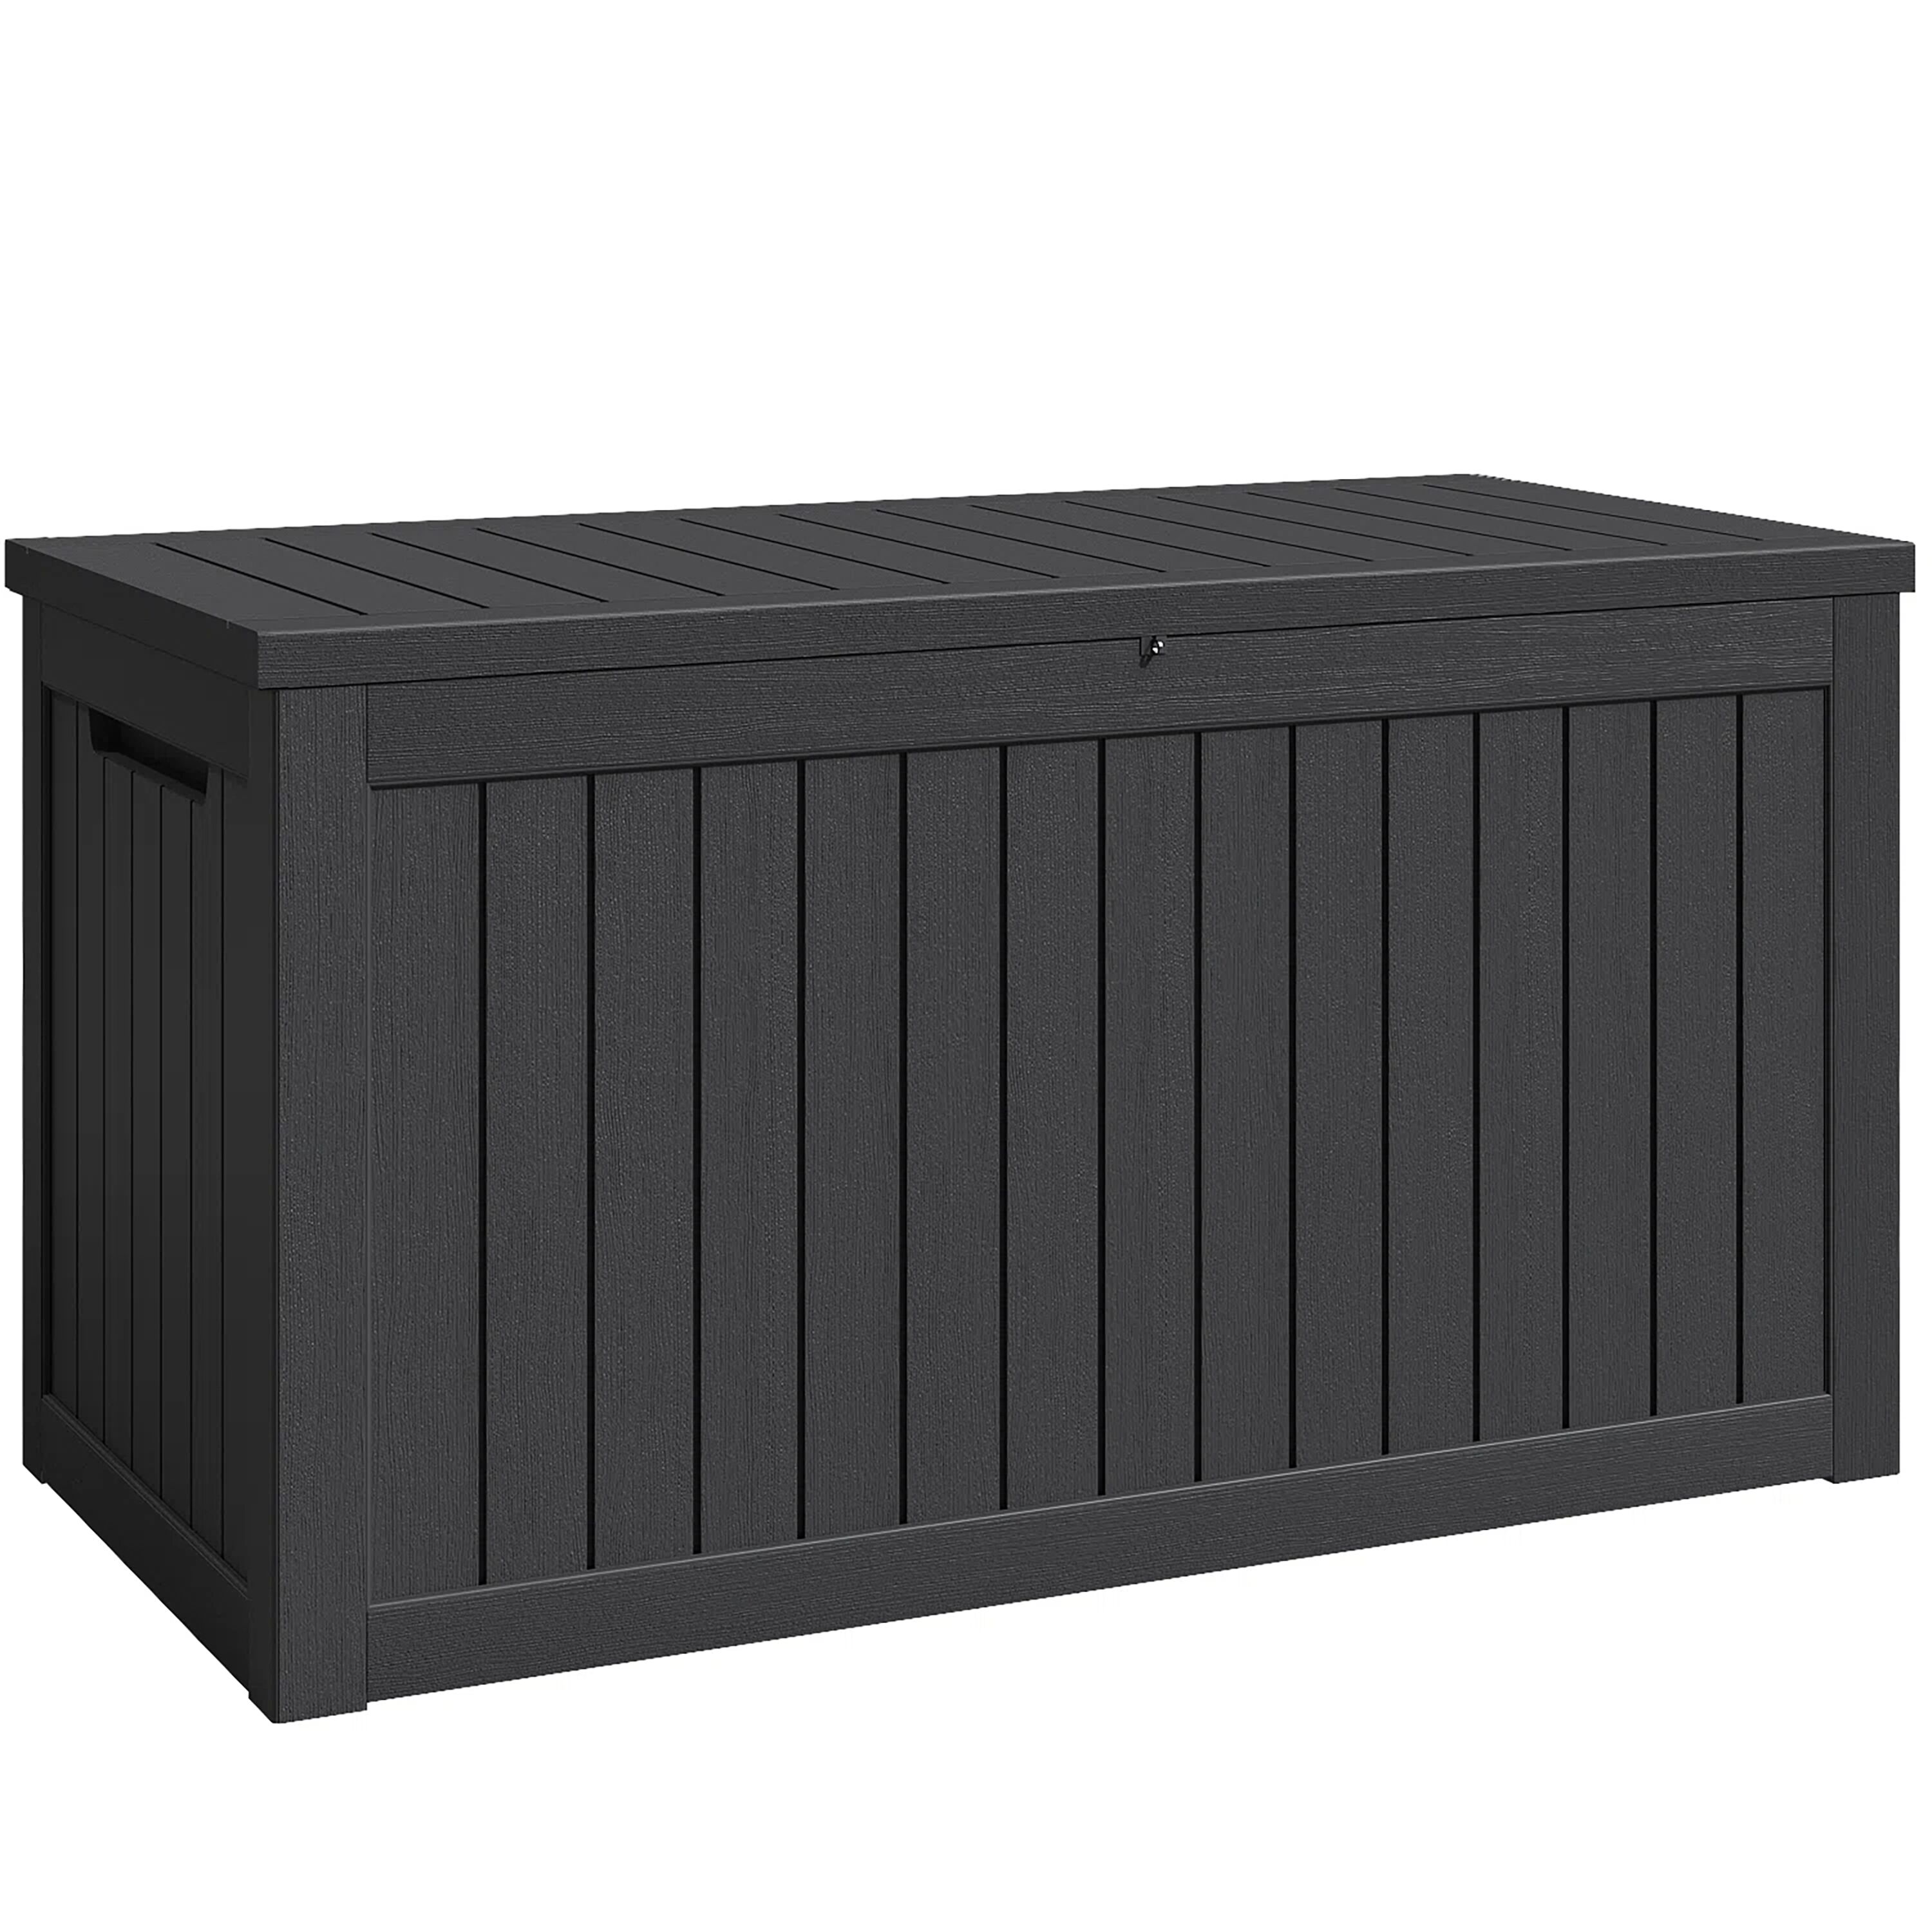 260 Gal Patio Resin Deck Box Waterproof Outdoor Storage Box